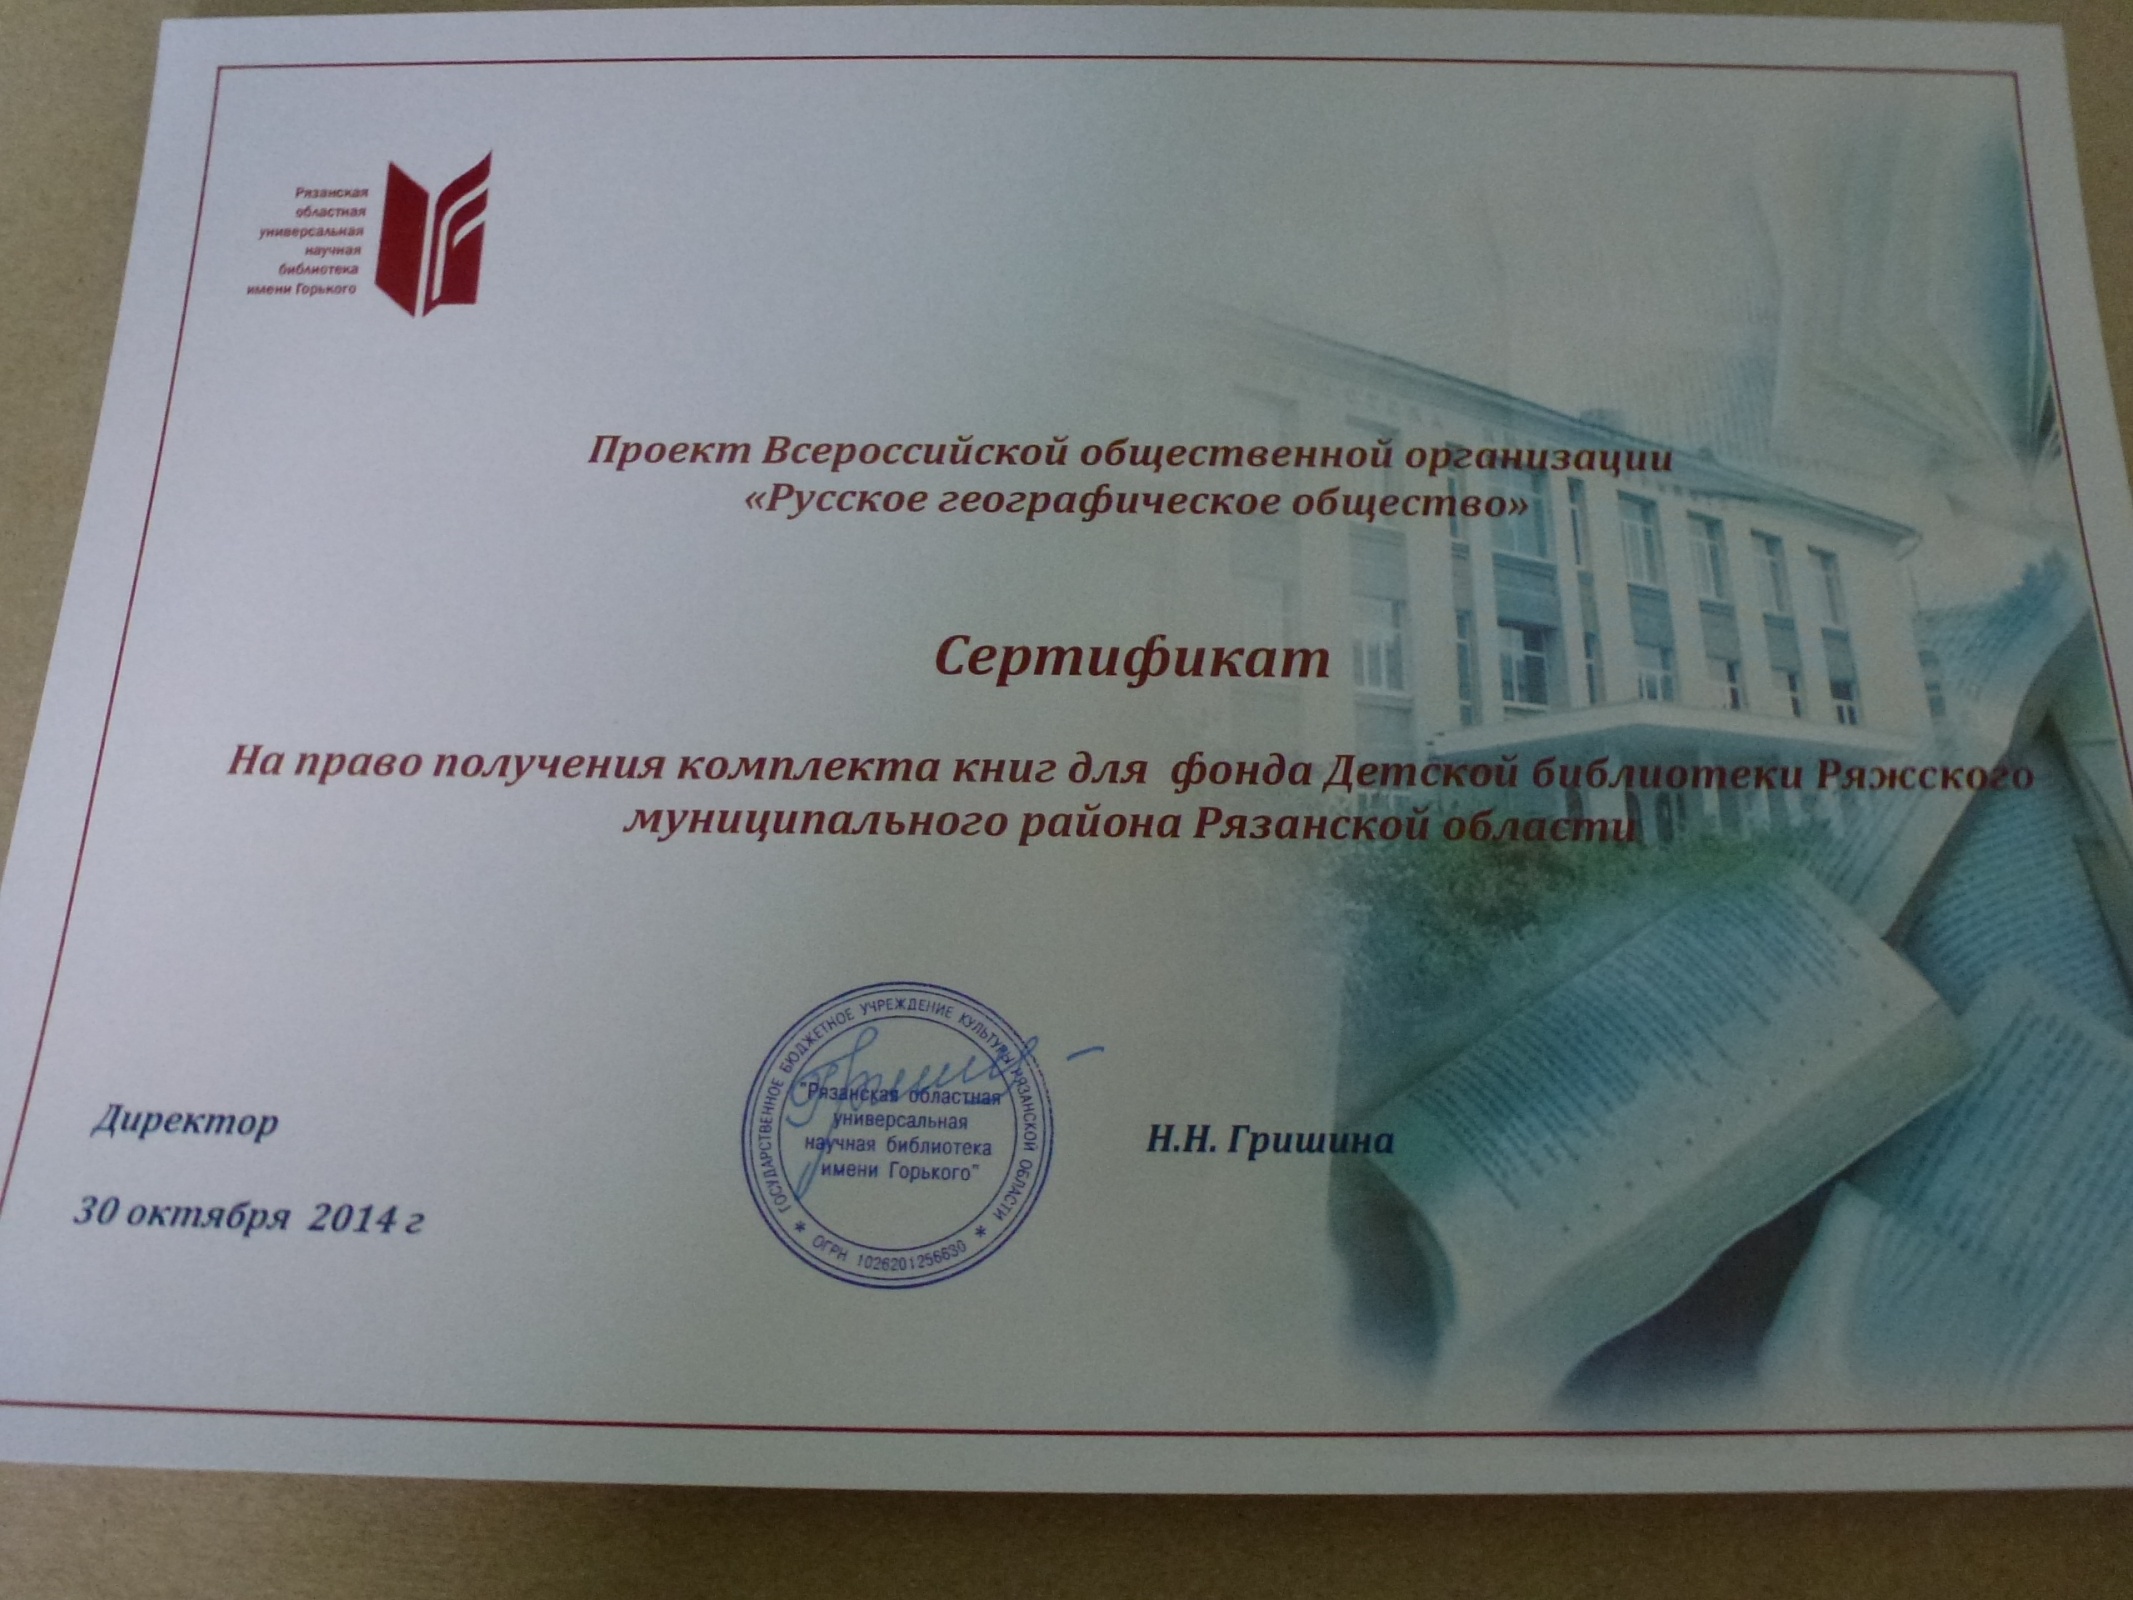 Сертификат на право получения комплекта книг